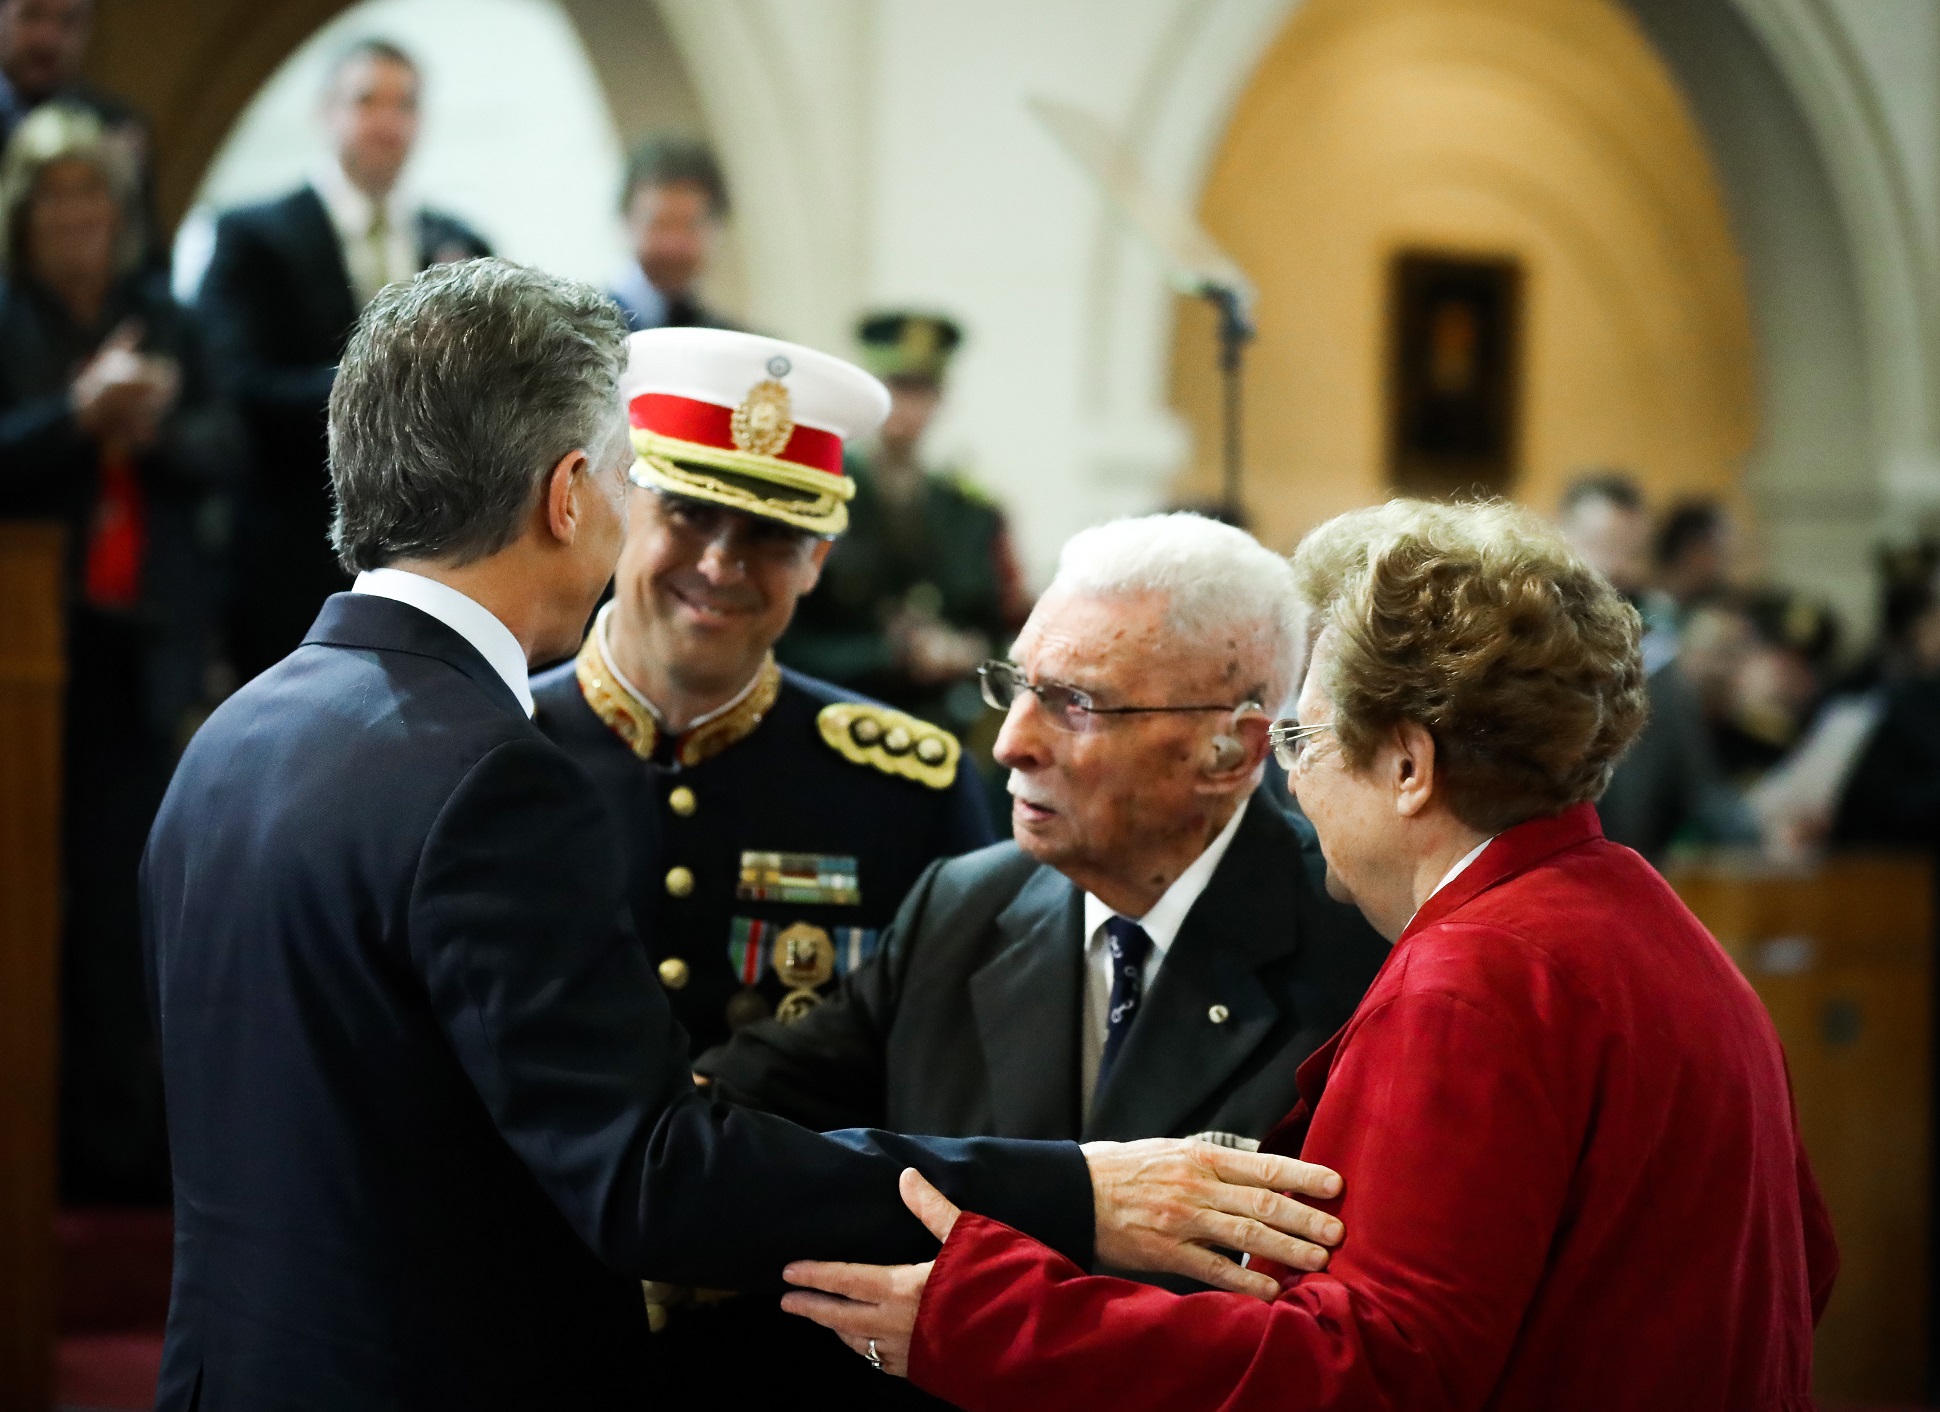 El presidente Macri encabezó el acto conmemorativo por el 150° aniversario del Colegio Militar